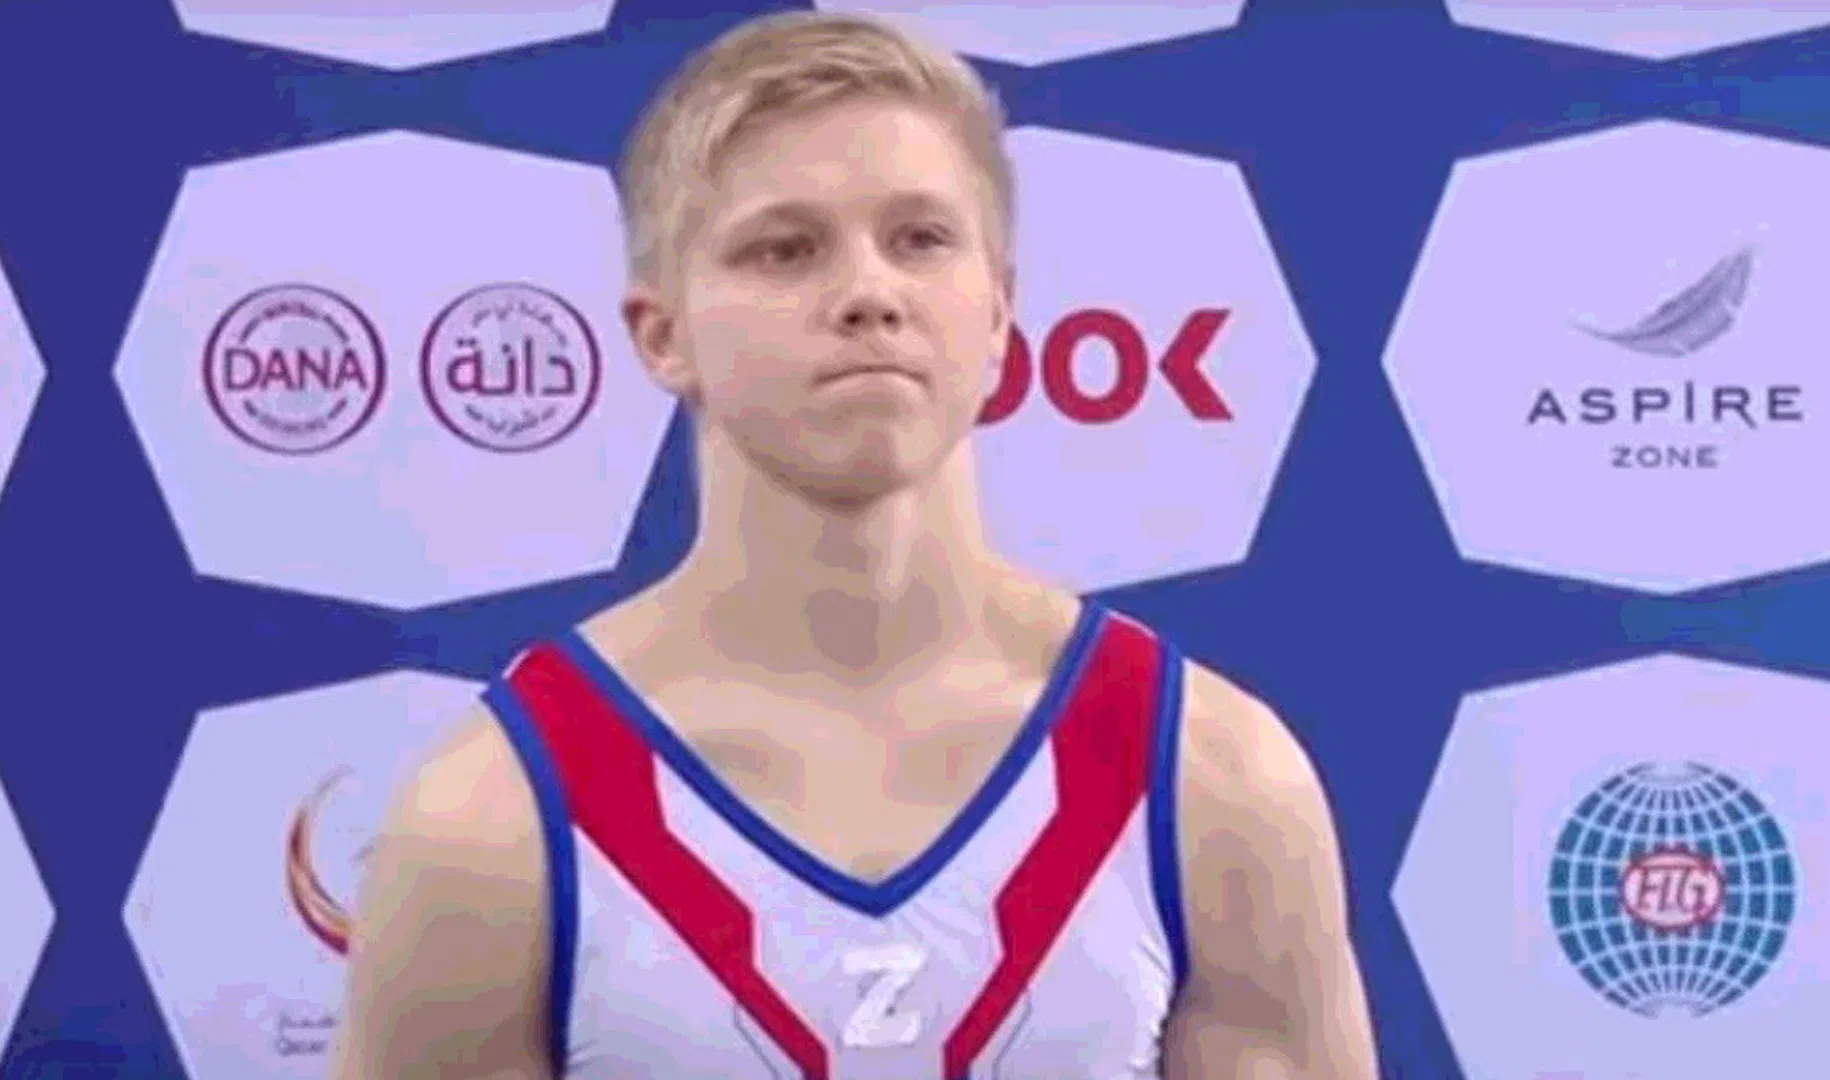 В Катаре гимнаст Иван Куляк, вышедший на награждение с символом Z на груди, возмутил представителей иностранных федераций